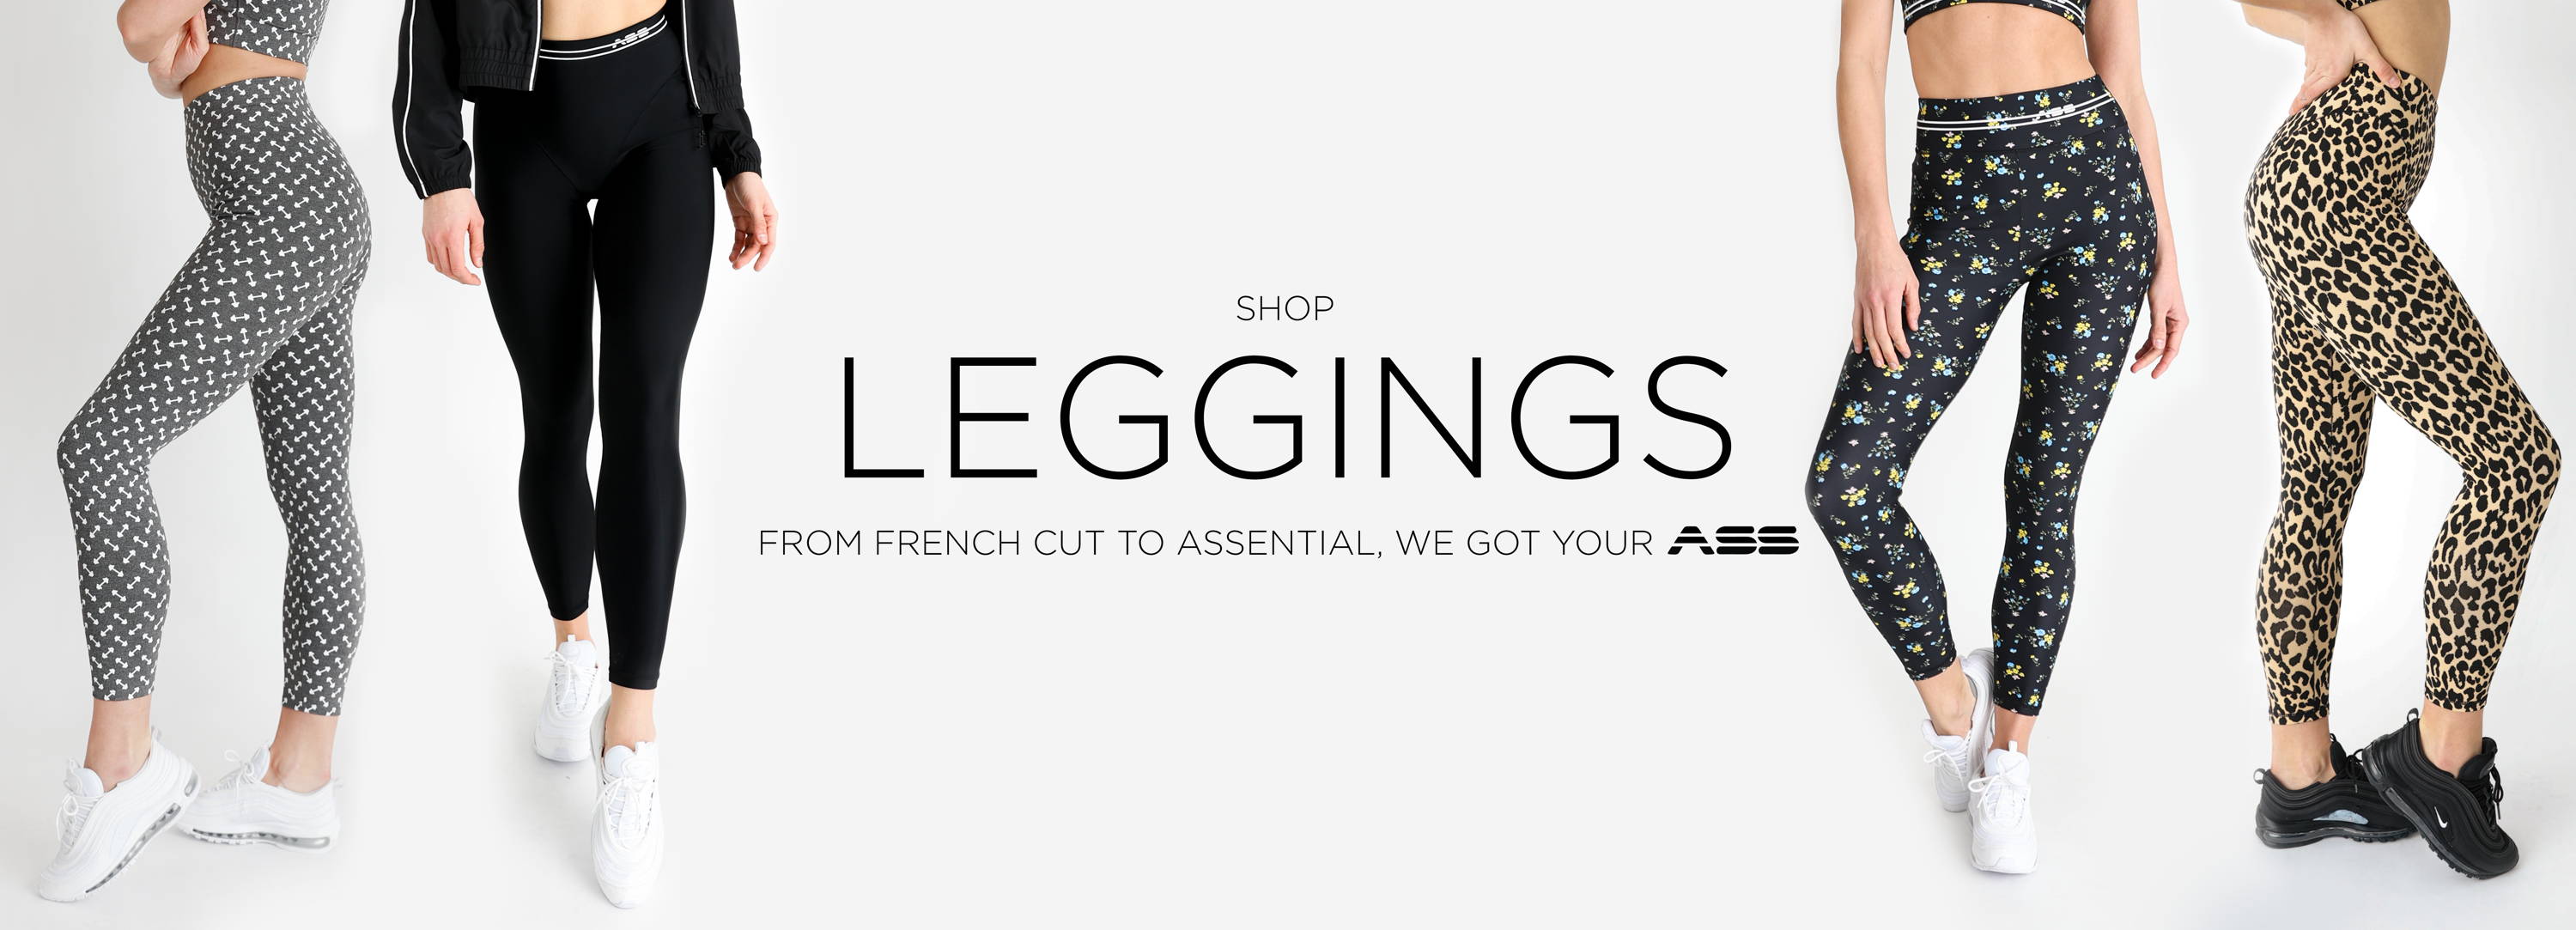 French Cut Legging